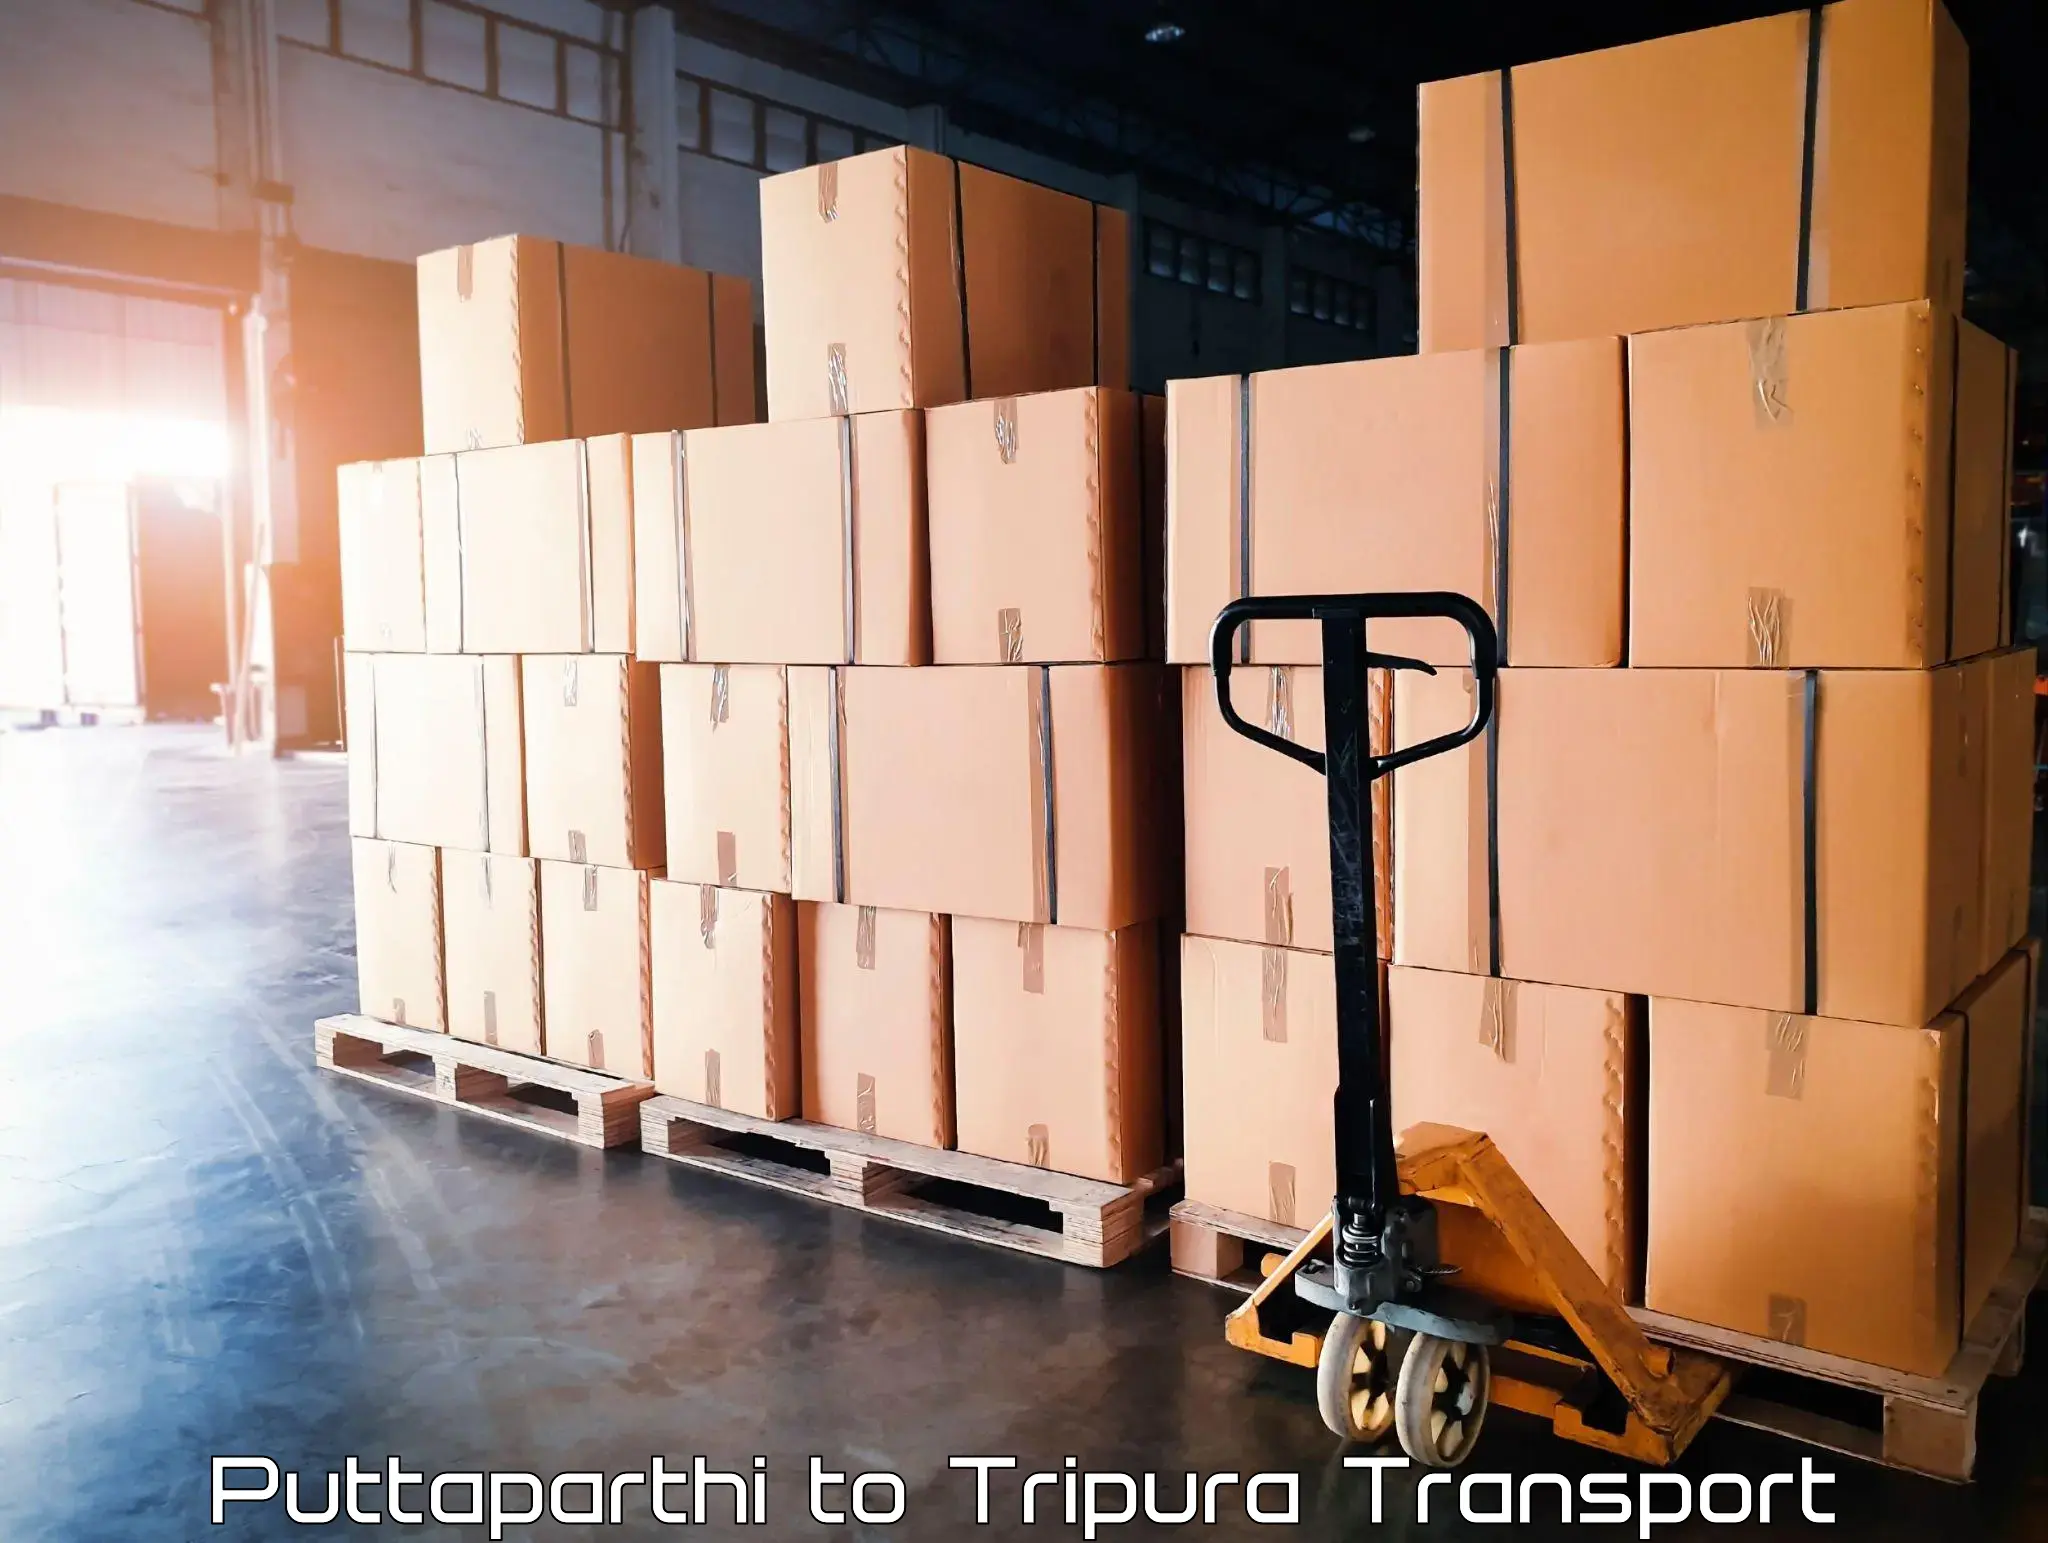 Online transport service Puttaparthi to Amarpur